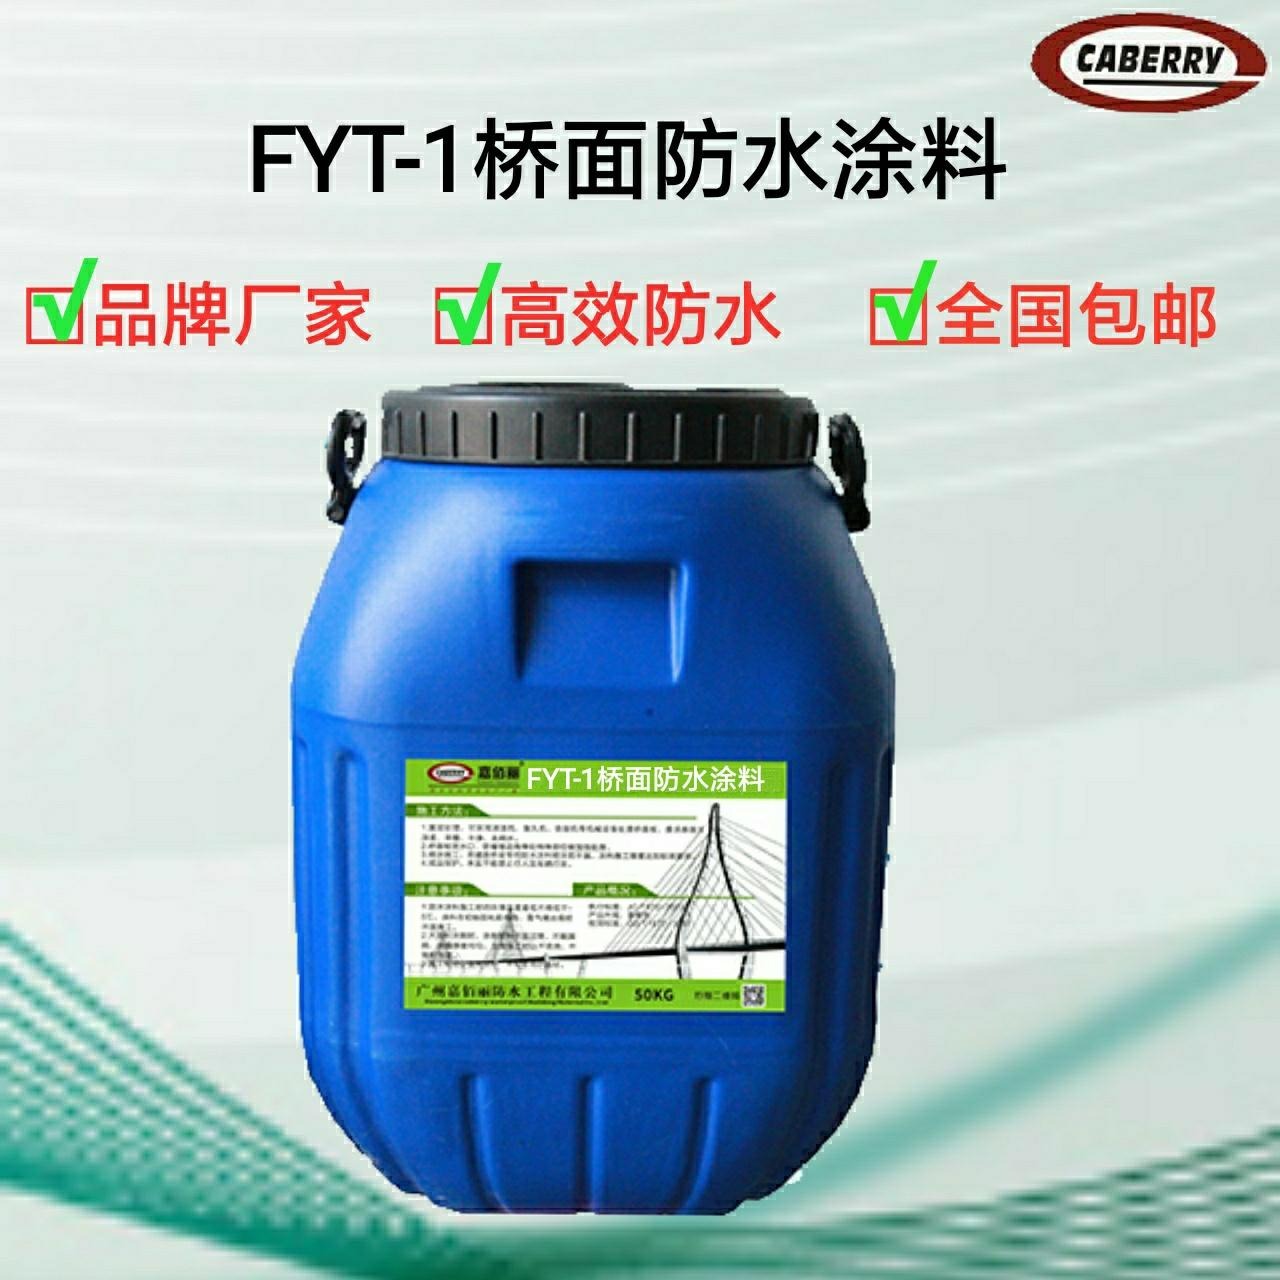 FYT-1改进型桥面防水涂料 工程要求专业防水材料